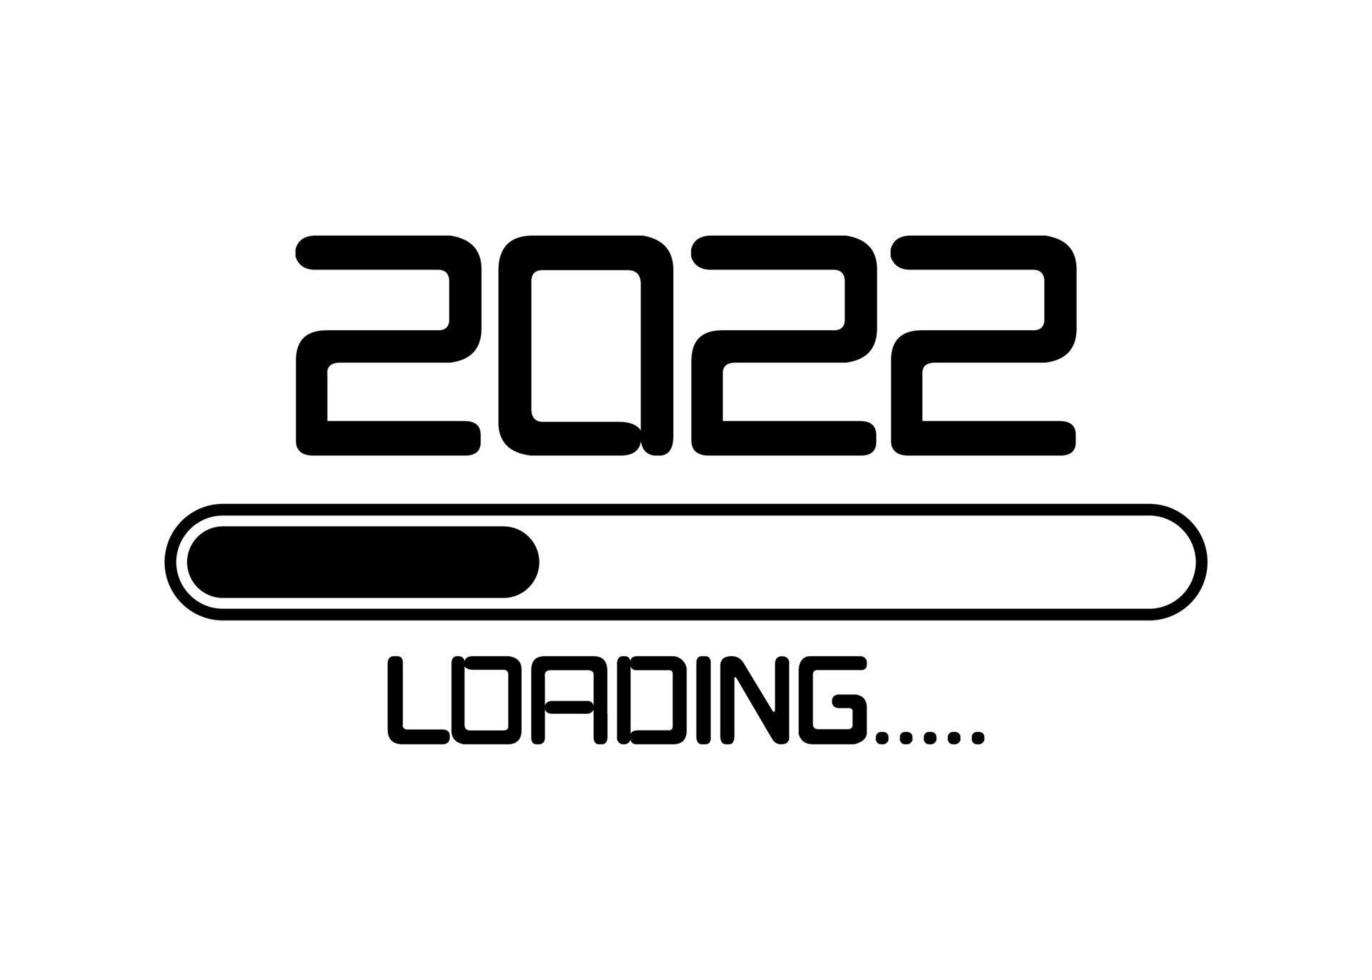 bonne année 2022 avec le style plat de l'icône de chargement. barre de progression atteignant presque le nouvel an. illustration vectorielle avec chargement 2022. fond isolé ou blanc vecteur